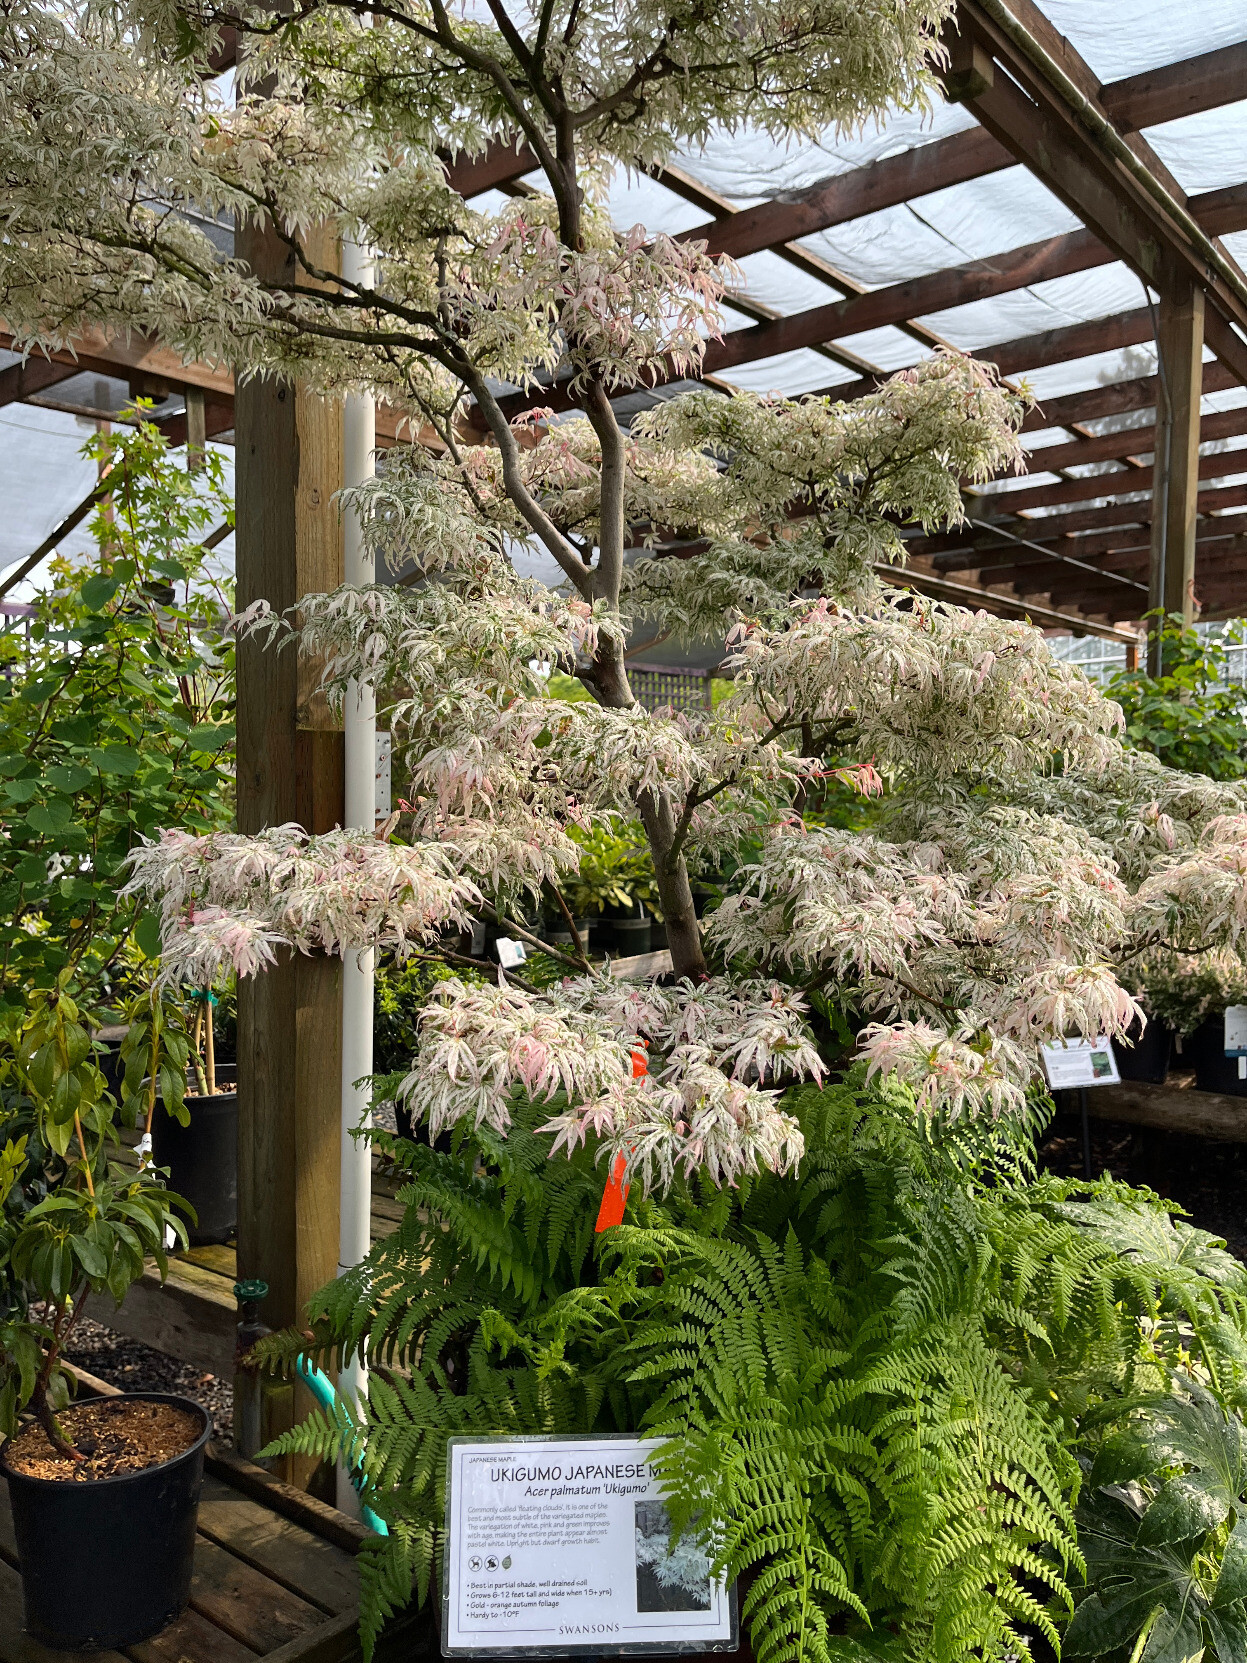 Swanson's Nursery - Acer palmatum 'Ukigumo'